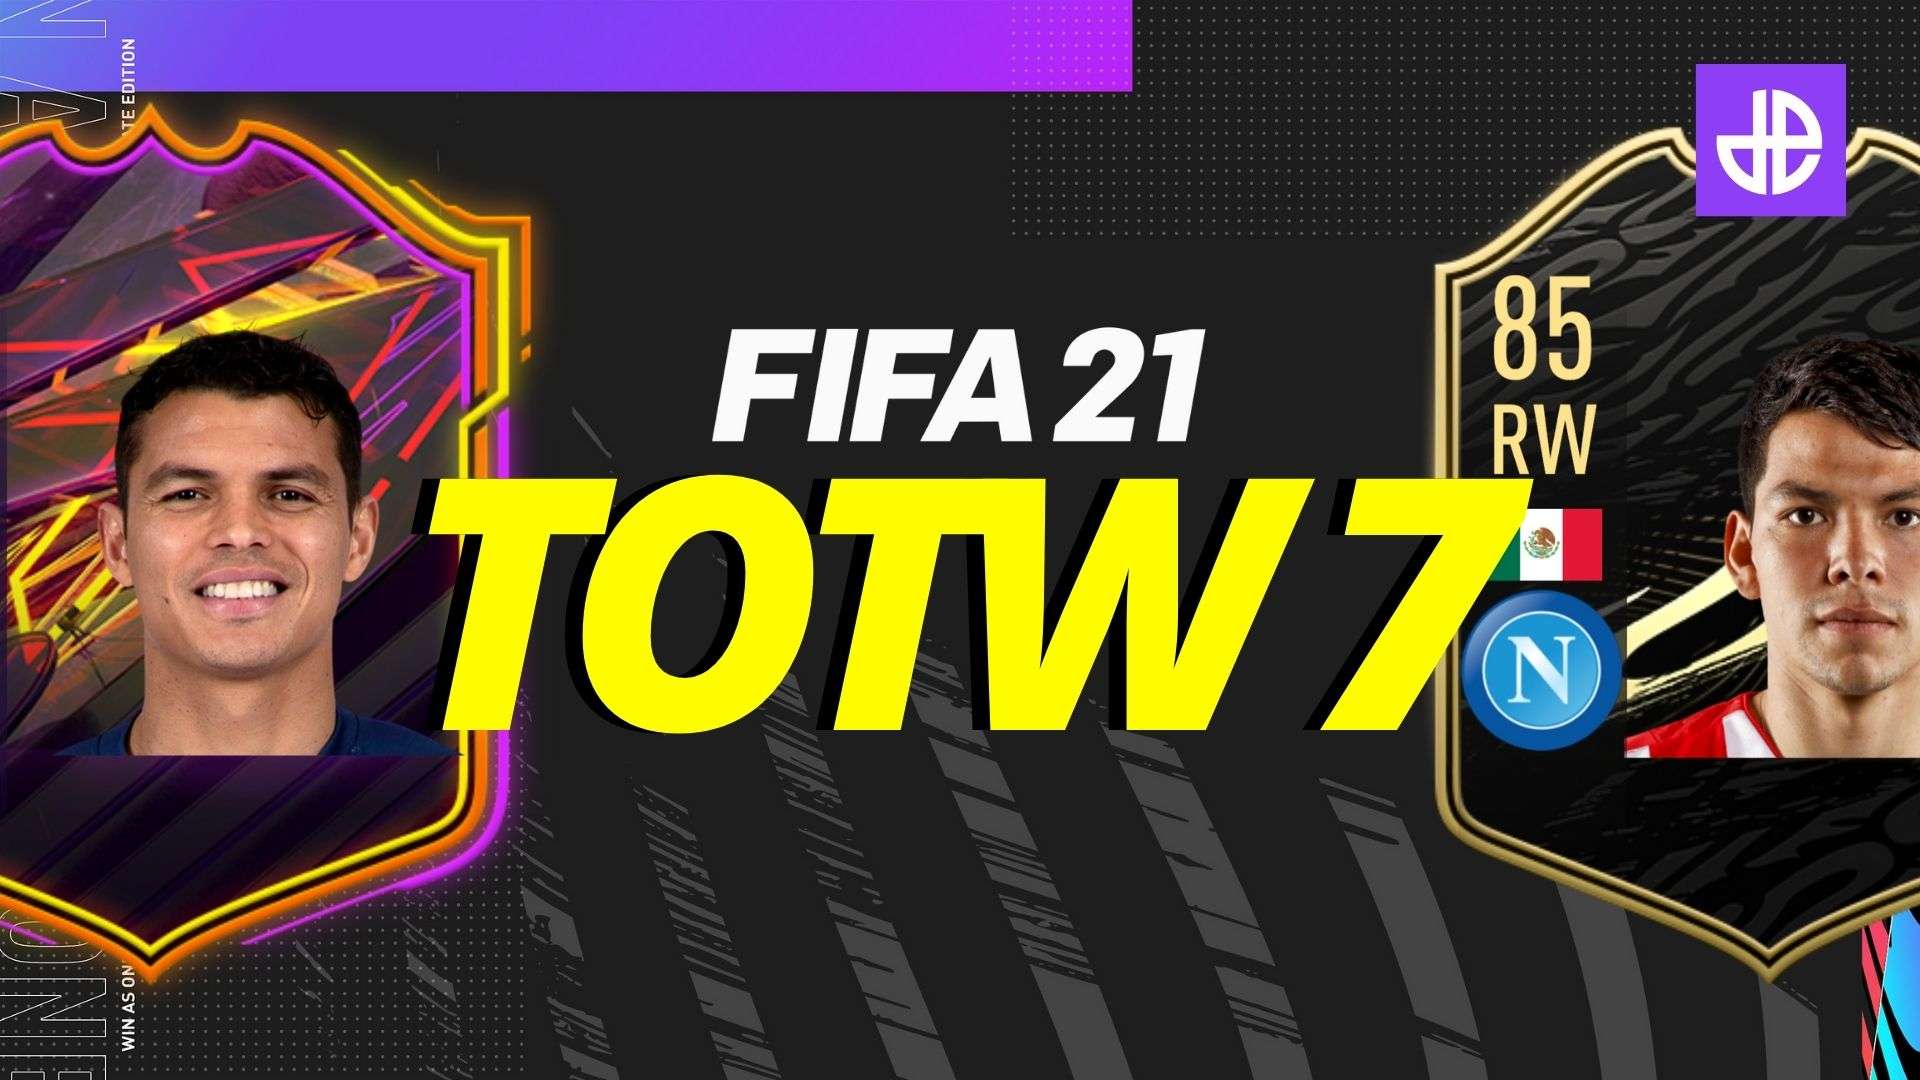 FIFA 21 totw 7 leak